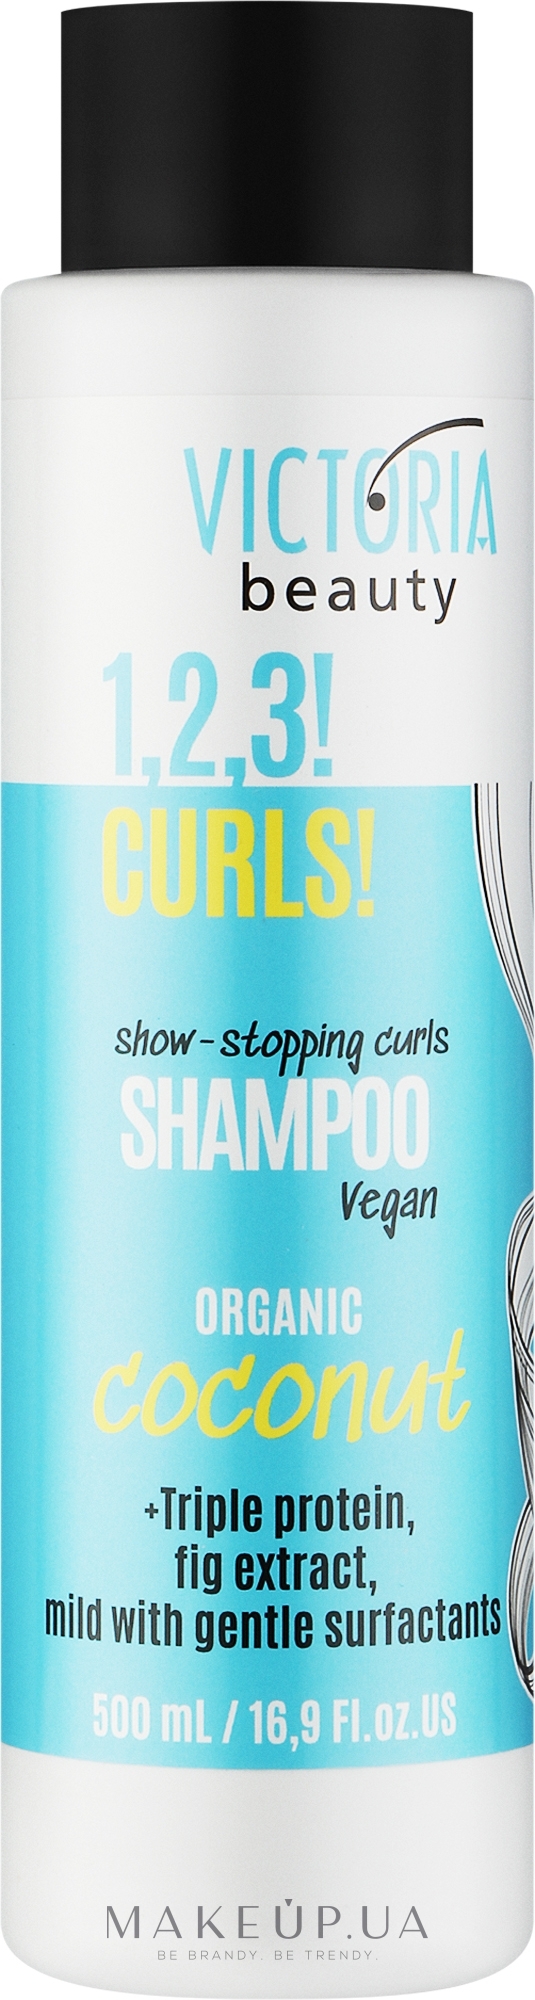 Шампунь для кудрявых волос - Victoria Beauty 1,2,3! Curls! Shampoo — фото 500ml